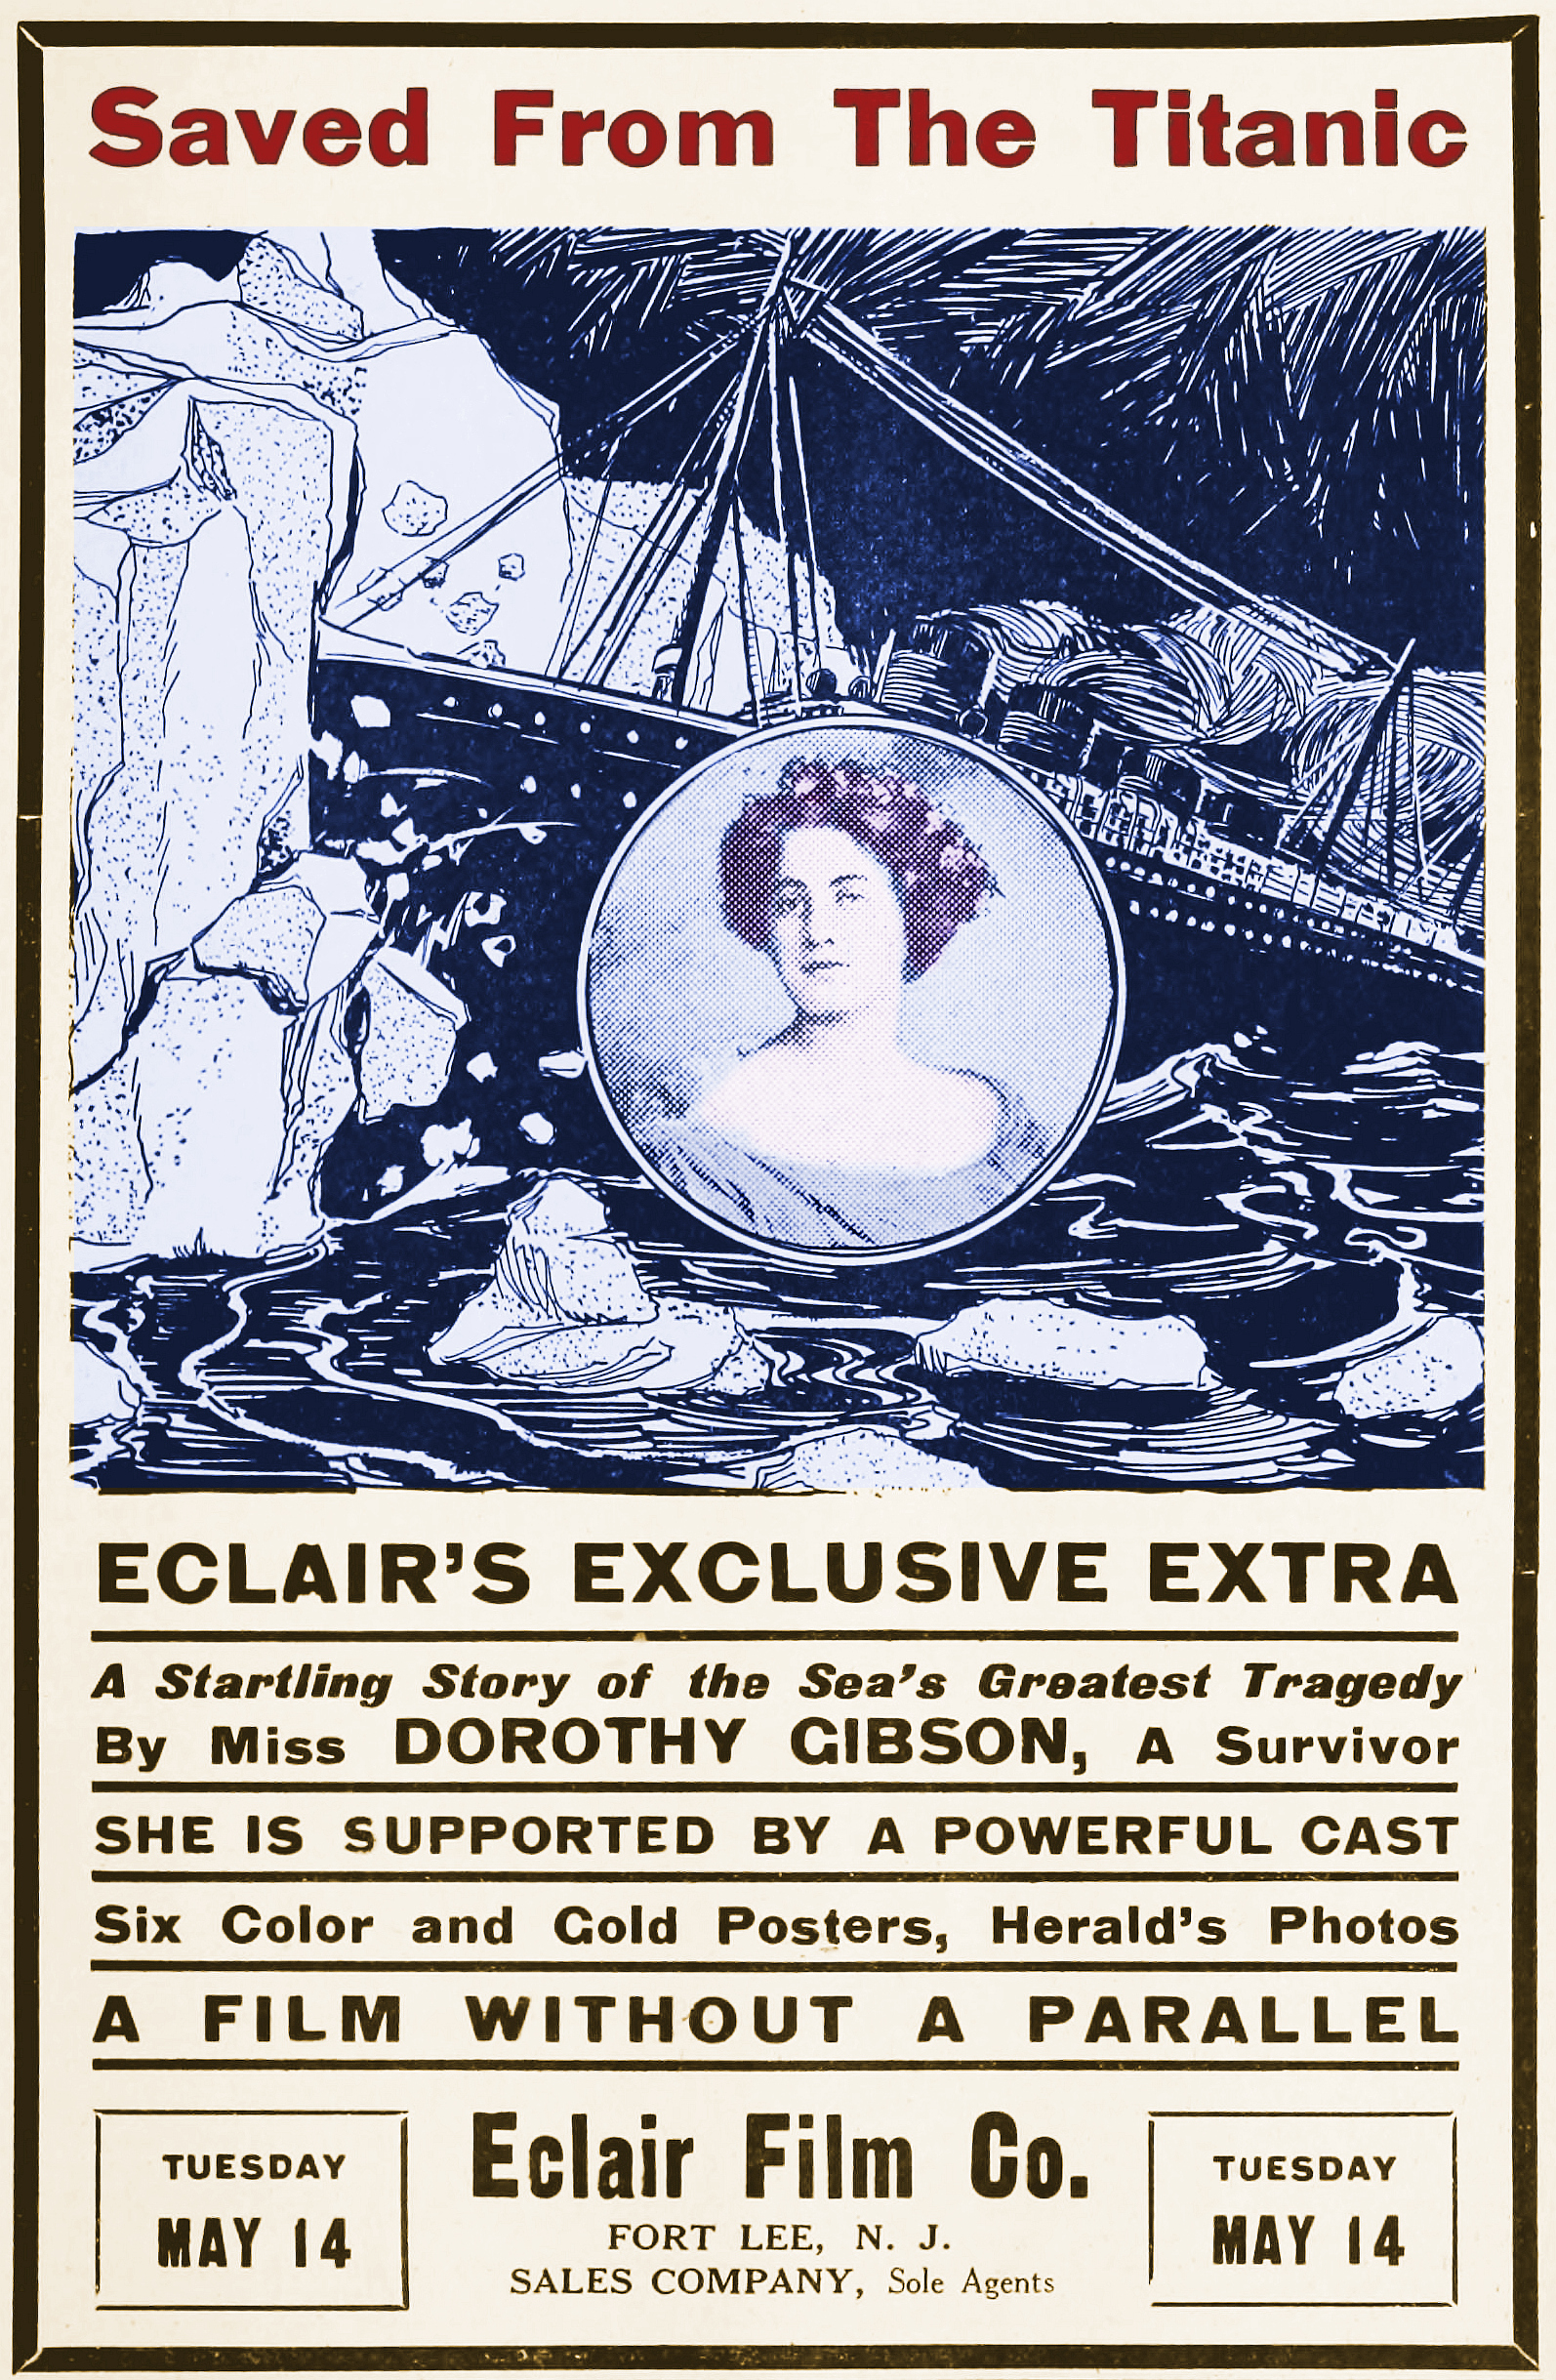 Dorothy Gibson: a atriz de Hollywood que sobreviveu ao Titanic